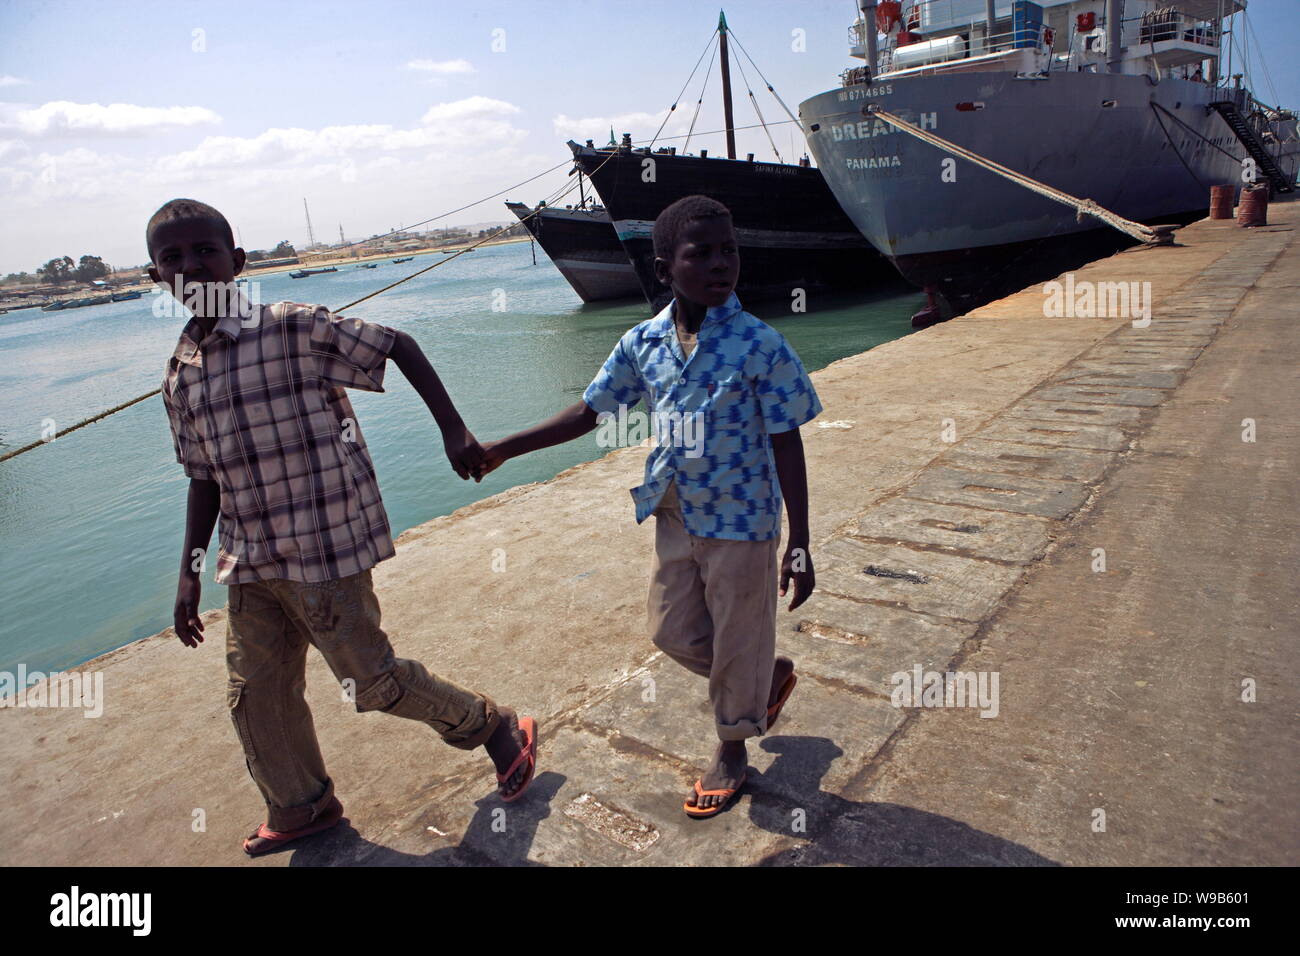 Zwei somalische Kinder Spaziergang entlang einem Dock am Hafen in Bosaso (Boosaaso), Somalia, 20. Januar 2009. Zwei junge chinesische Journalisten waren, Somal gesendet Stockfoto